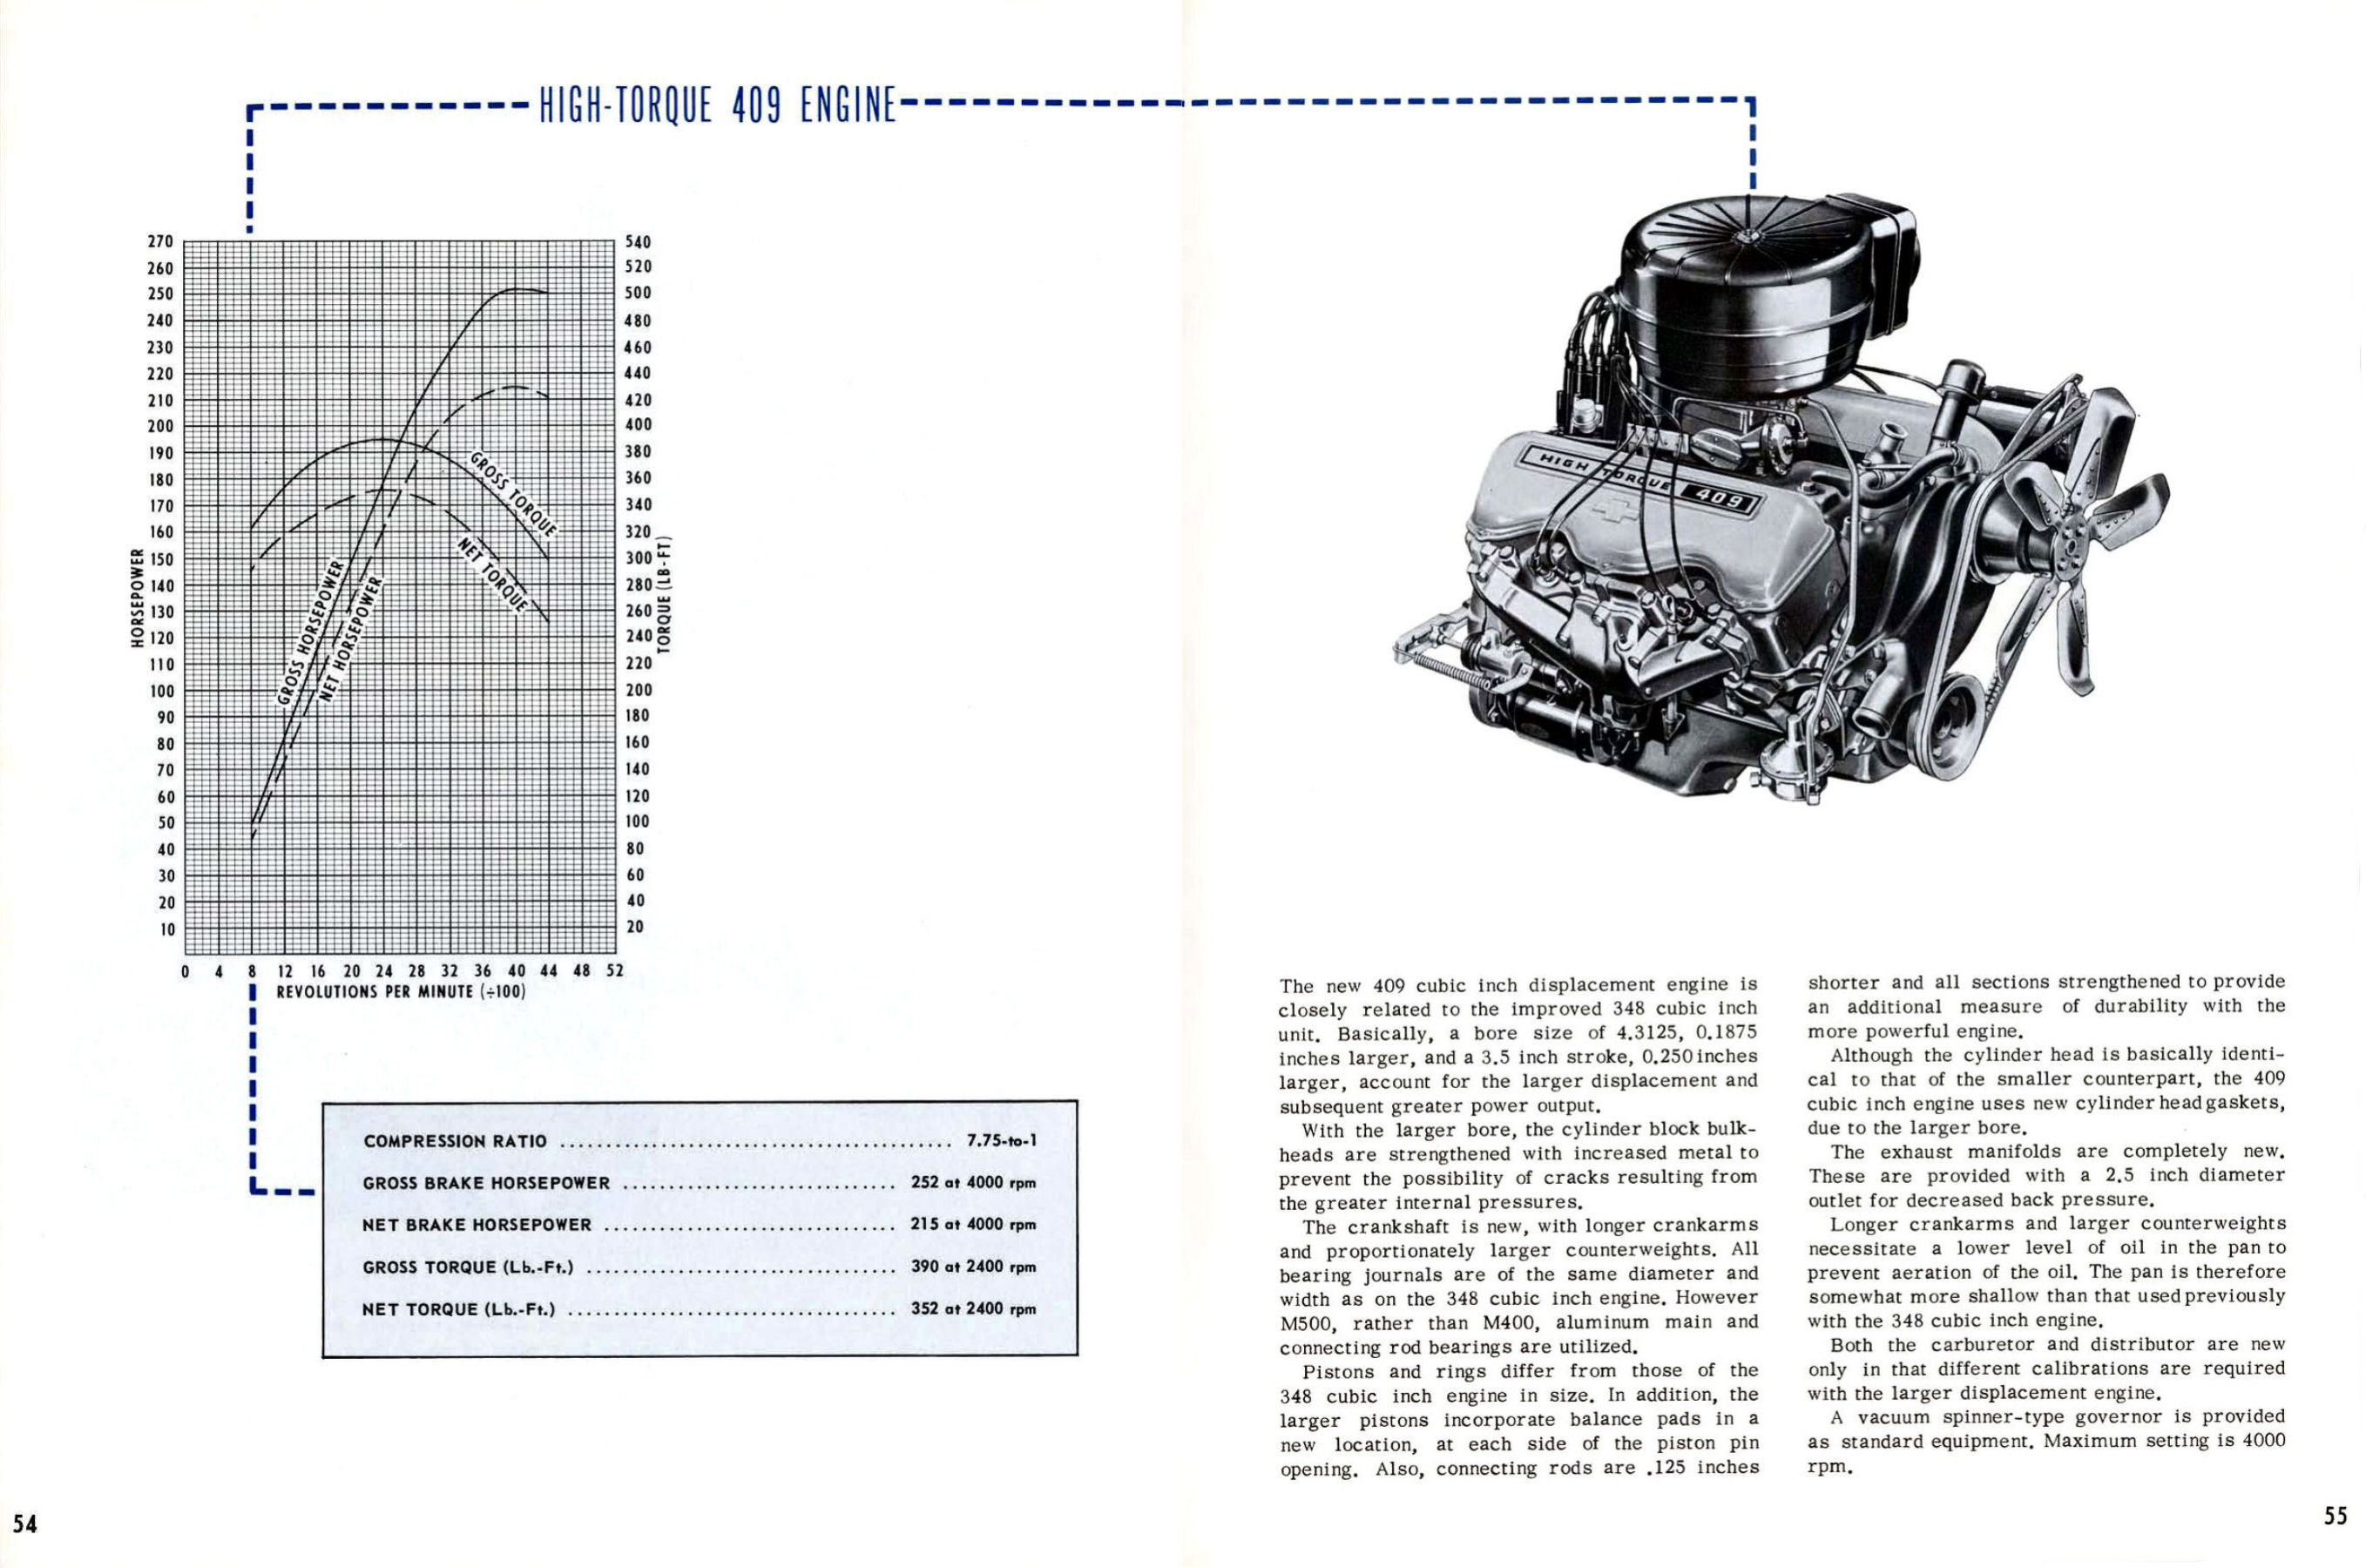 1962 Chevrolet Truck Engineering Features-54-55